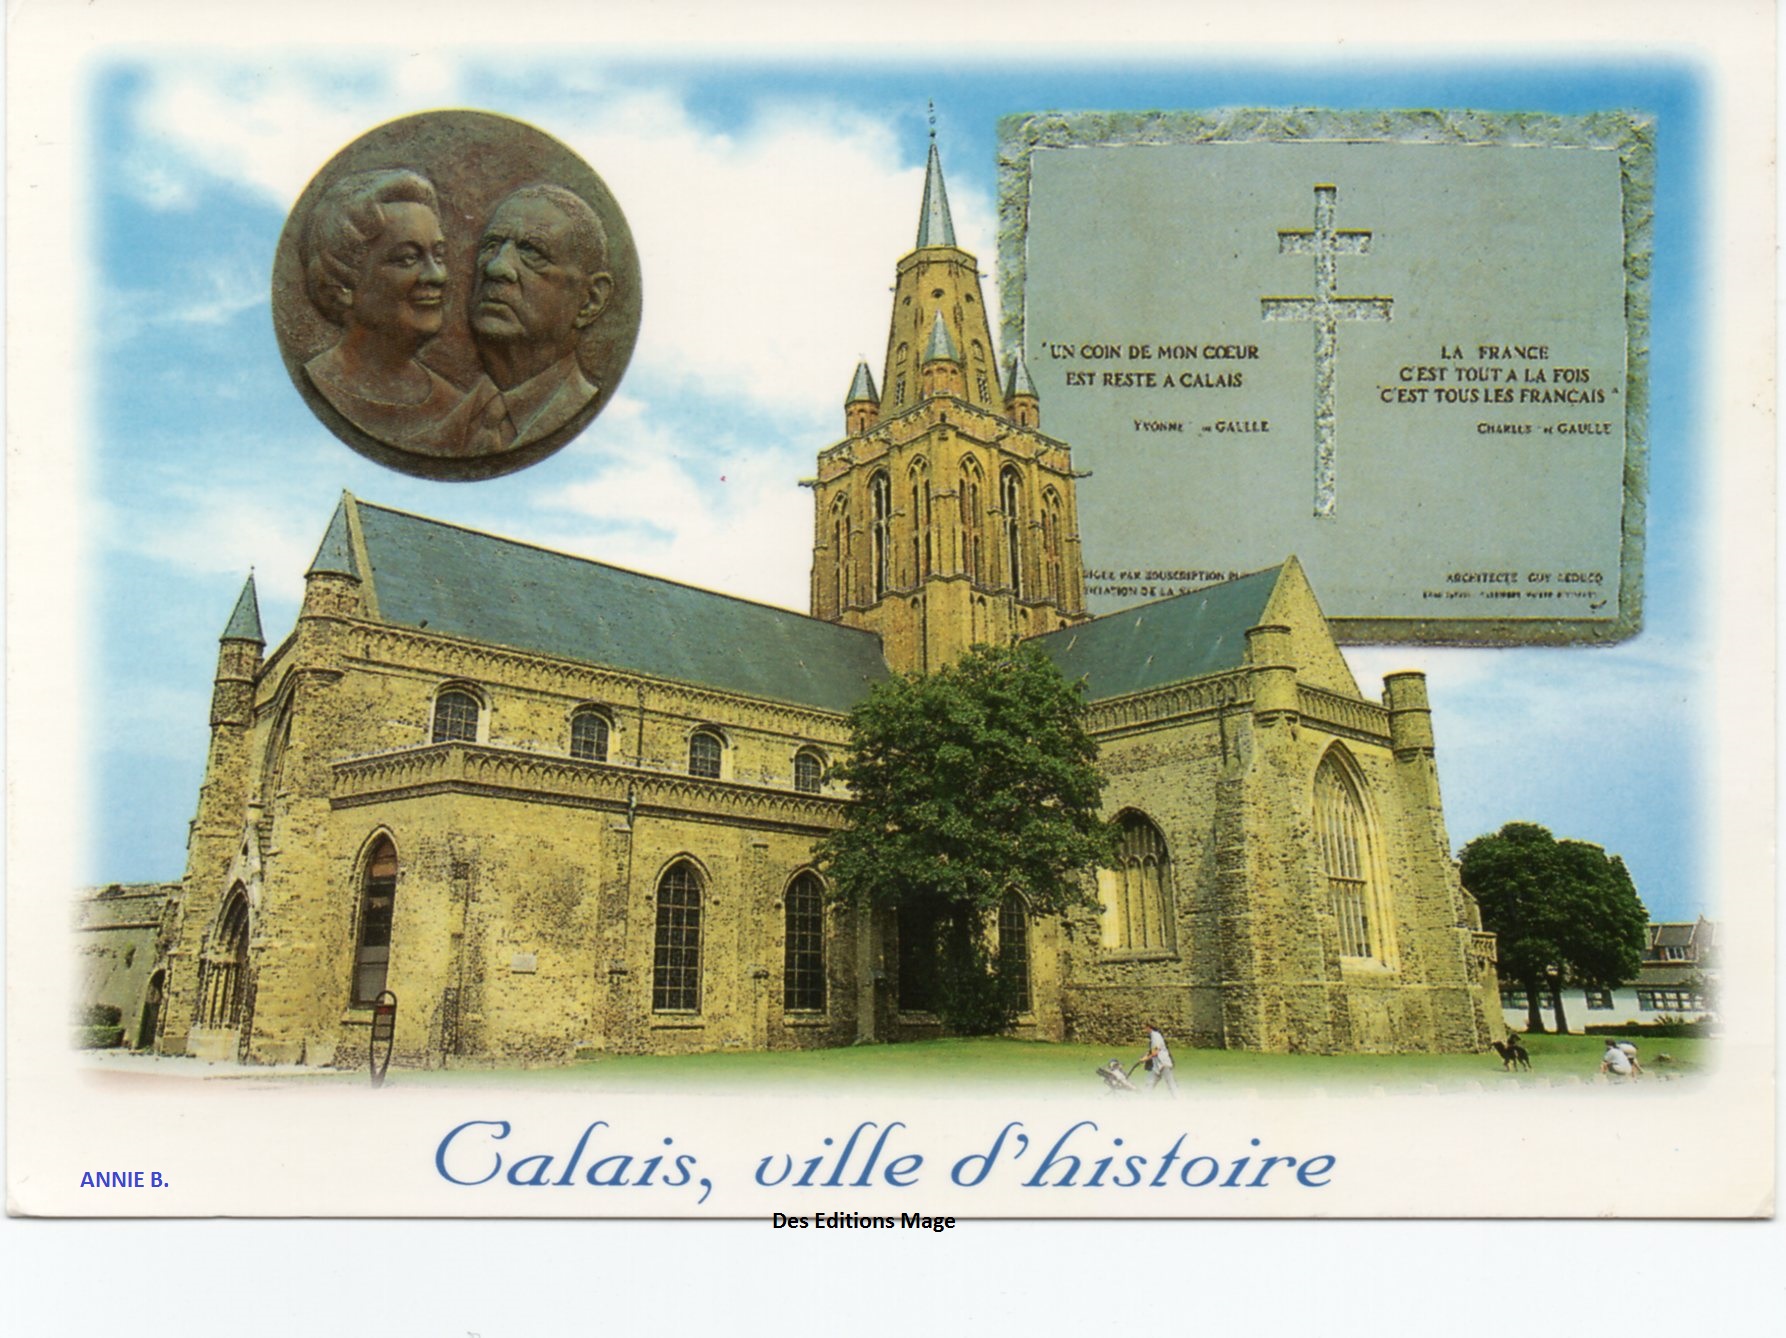 Carte postale sur Notre- Dame